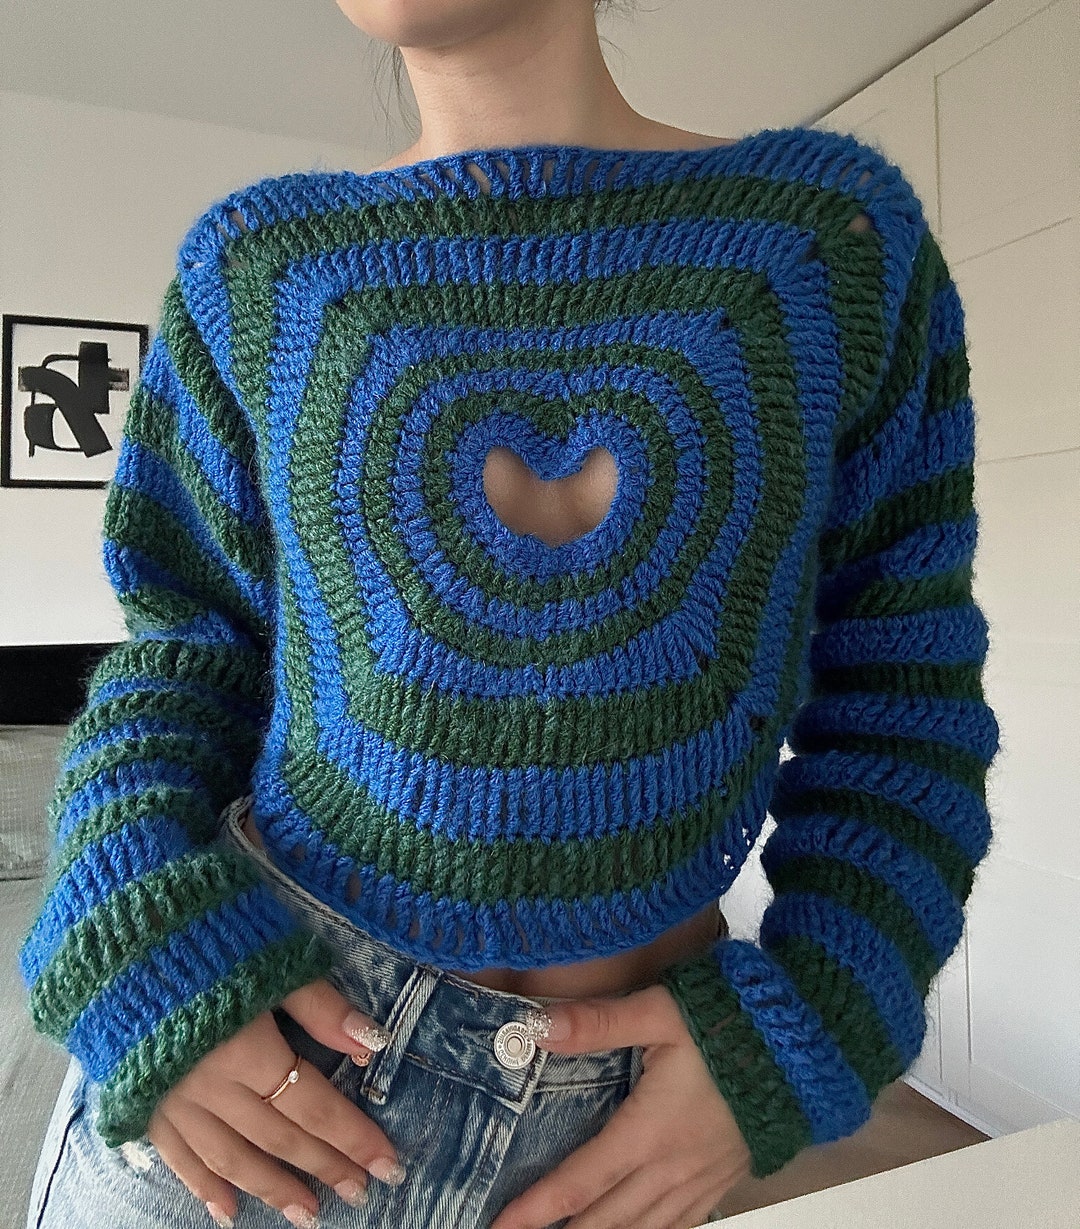 Crochet Heart Cut Out Sweater Pattern, Heartburn Crochet Long Sleeve ...